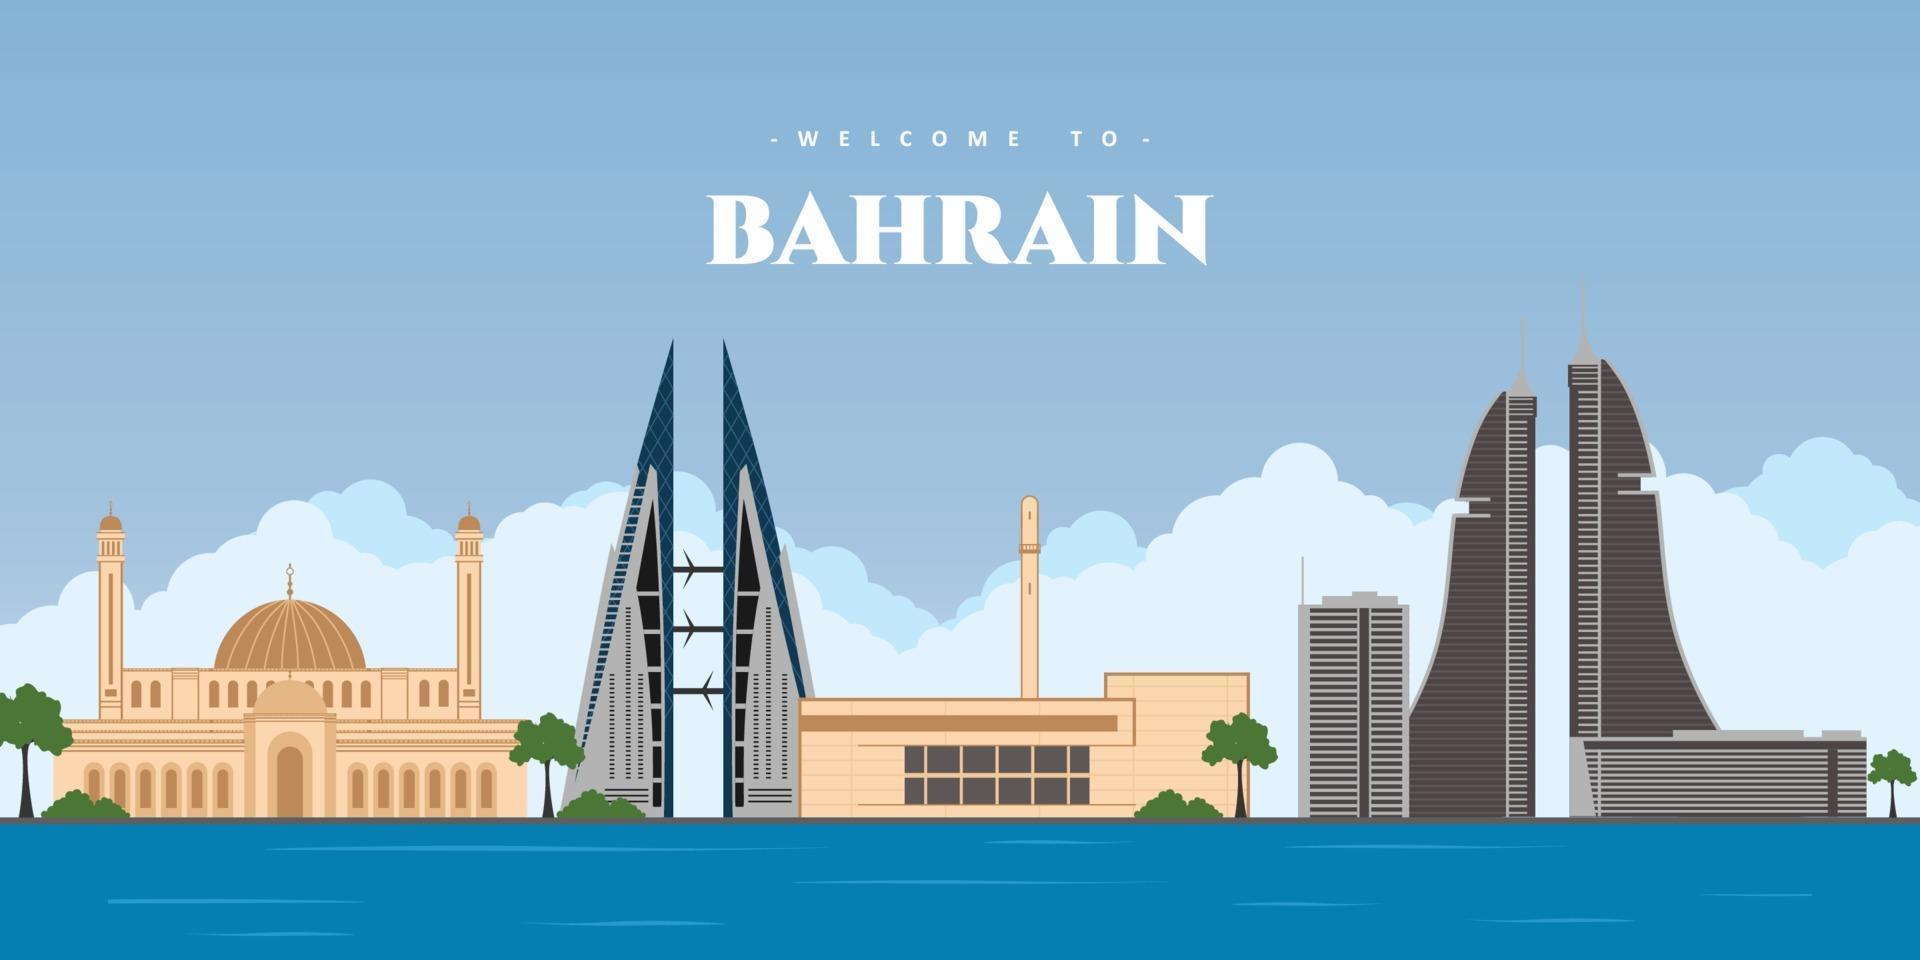 grande paisagem panorâmica da cidade de Bahrein. horizonte de manama com marco de edifícios coloridos. bem-vindo ao cartão postal de Bahrein. viagens e o conceito de viagem do país islâmico. ilustração vetorial vetor